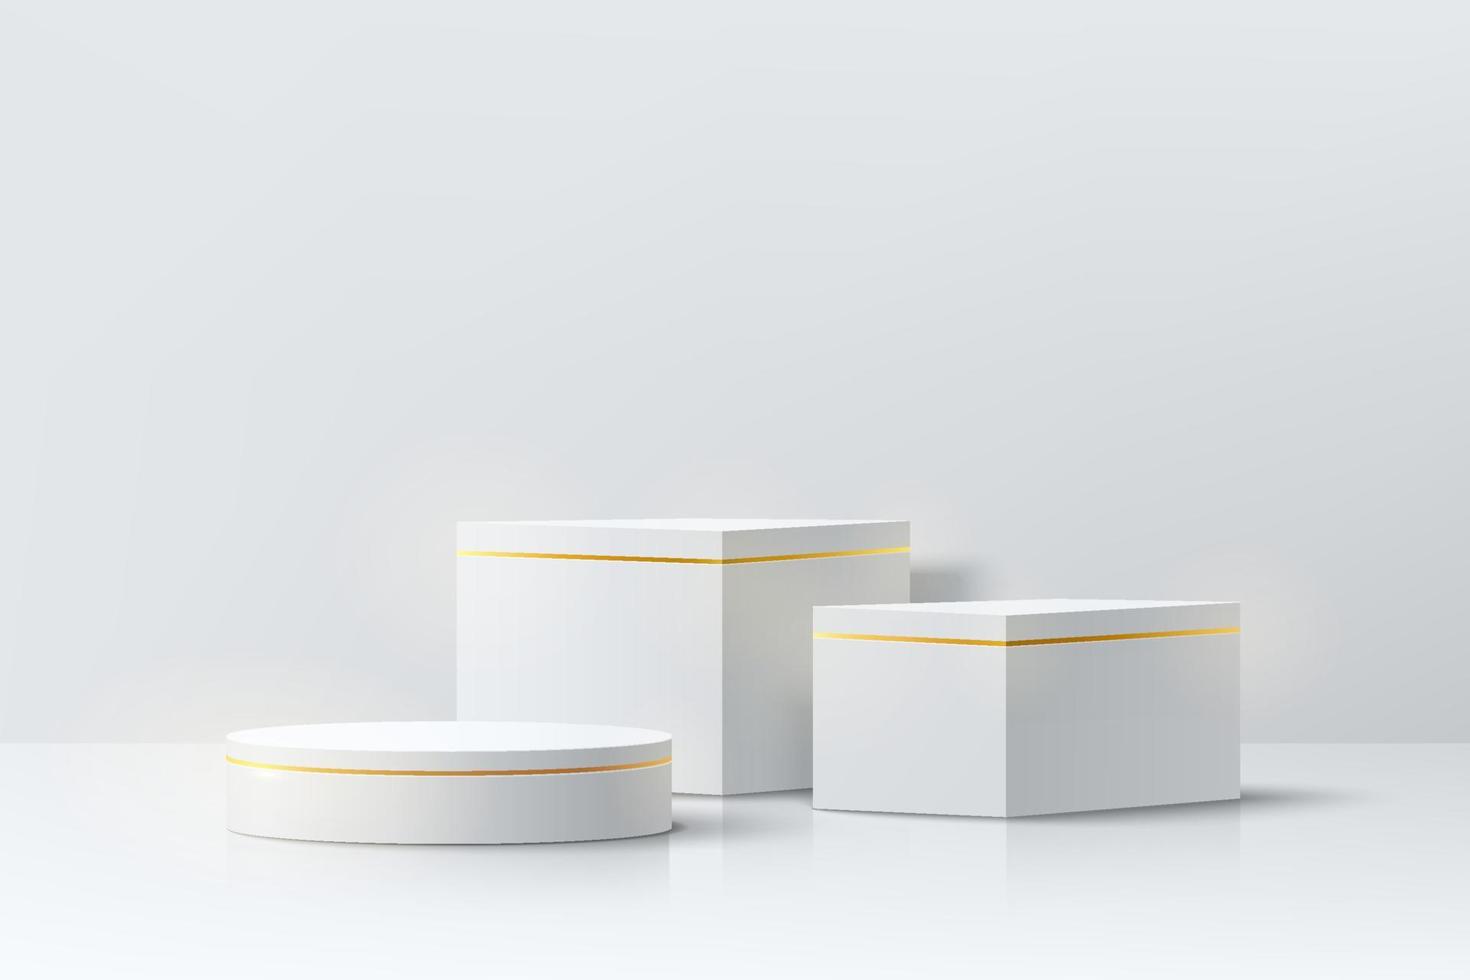 cubo 3d realista branco e dourado e pódio de pedestal de cilindro definido na sala abstrata. cena mínima para vitrine de palco de produtos, exibição de promoção. vector design de grupo de formas geométricas. vetor eps10